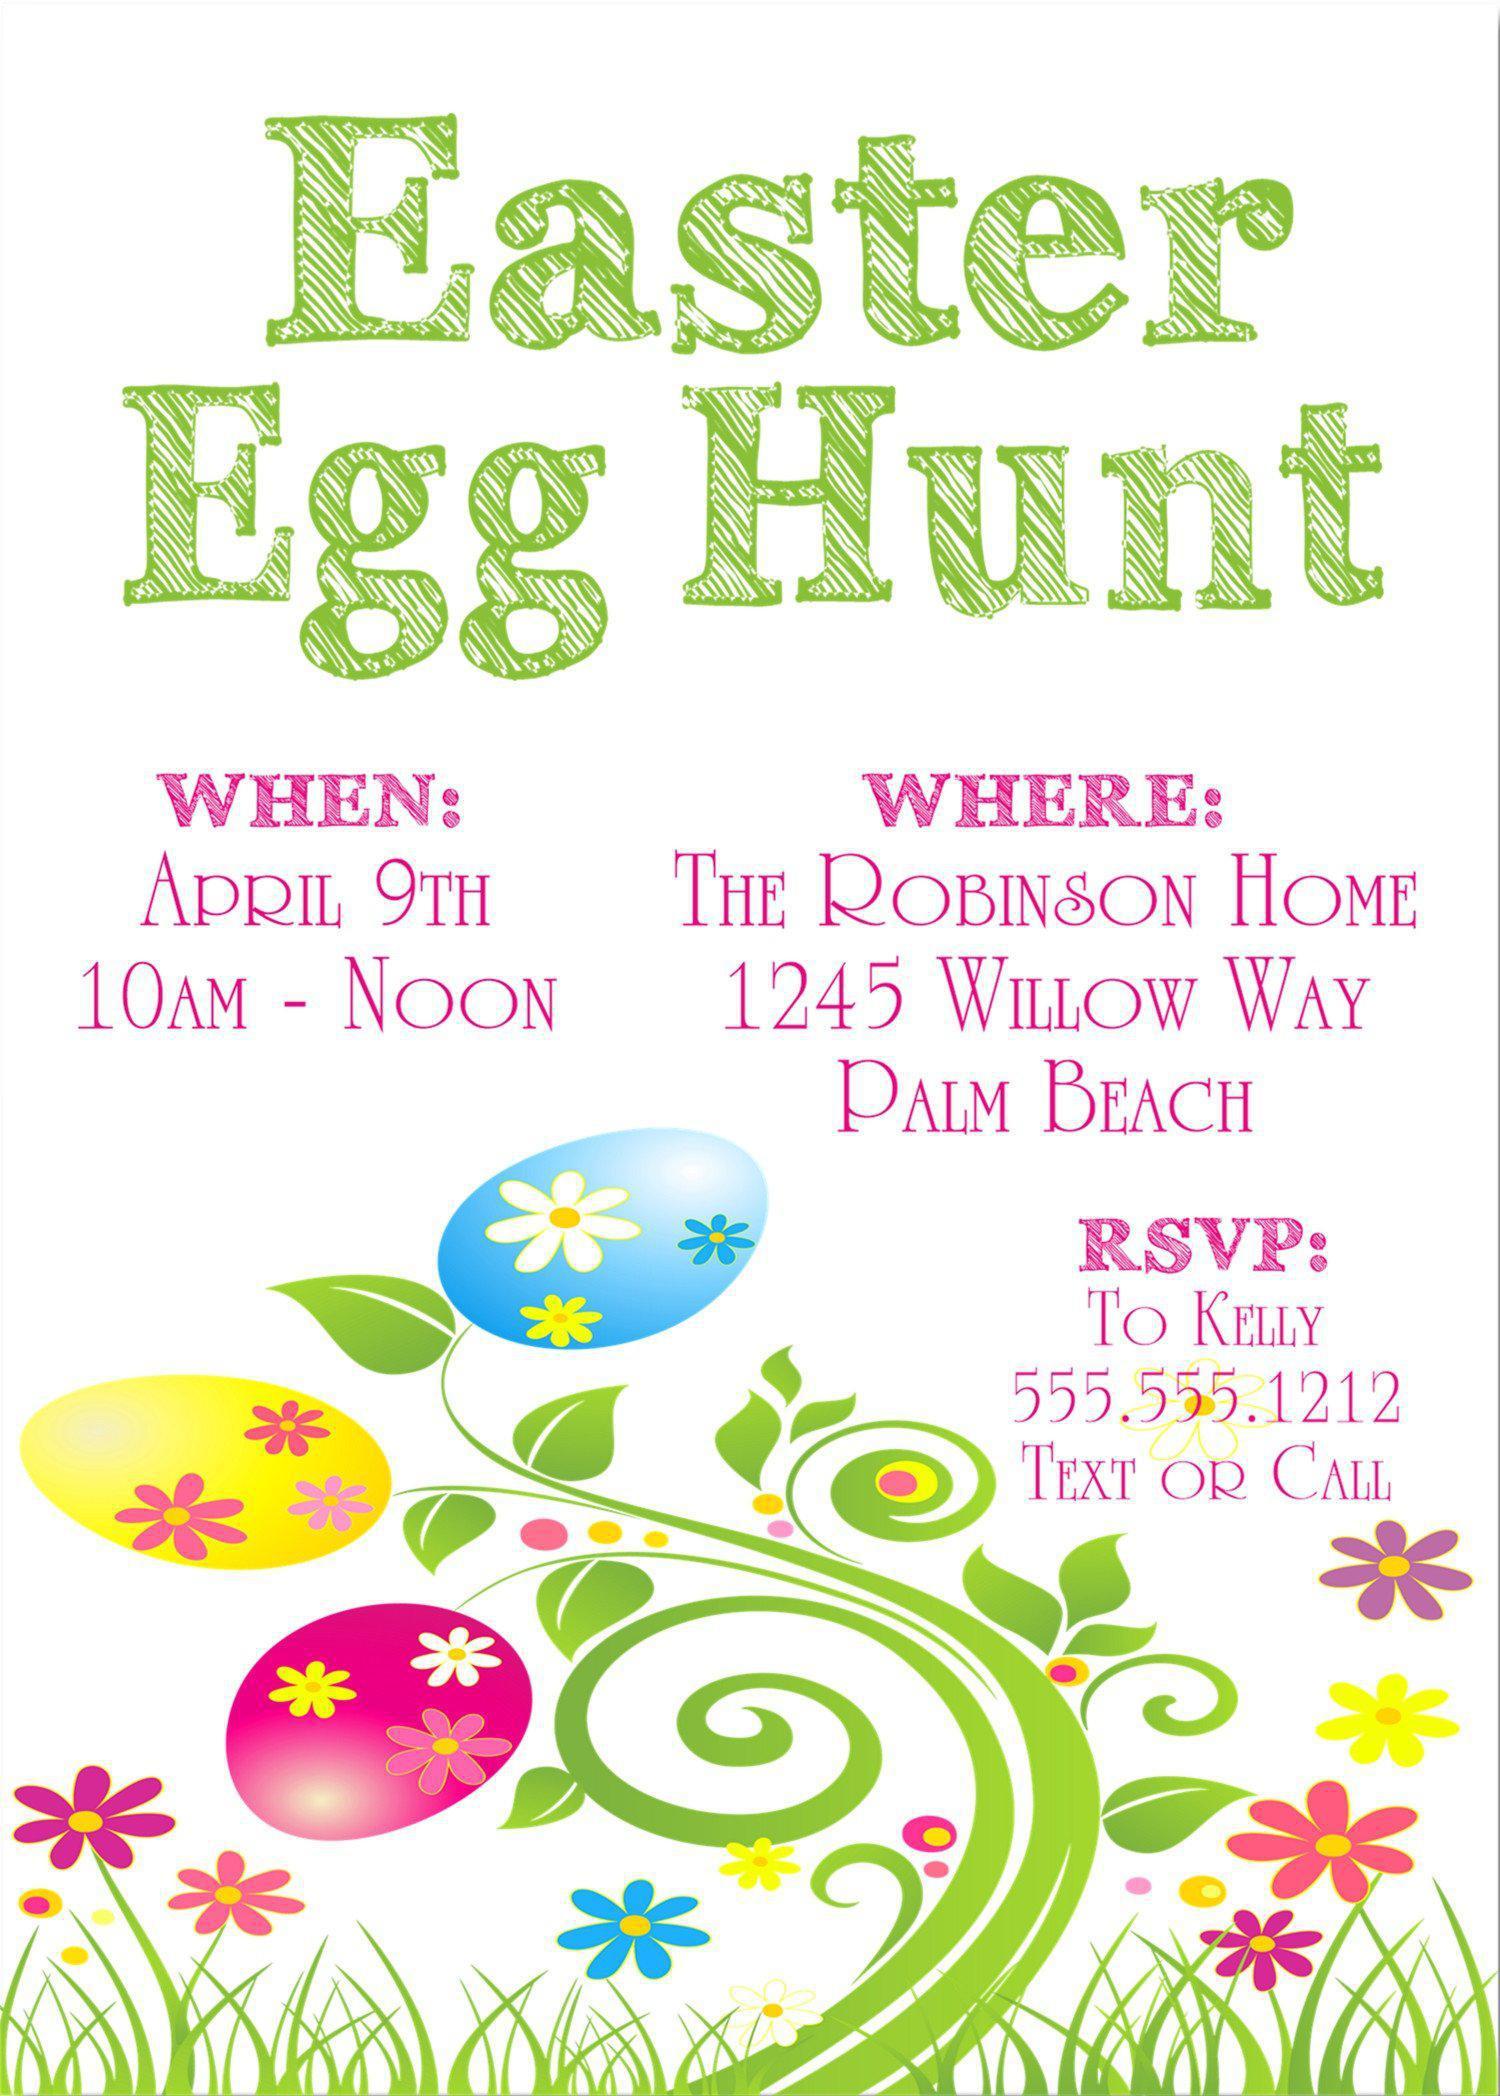 Easter Egg Hunt Invitations